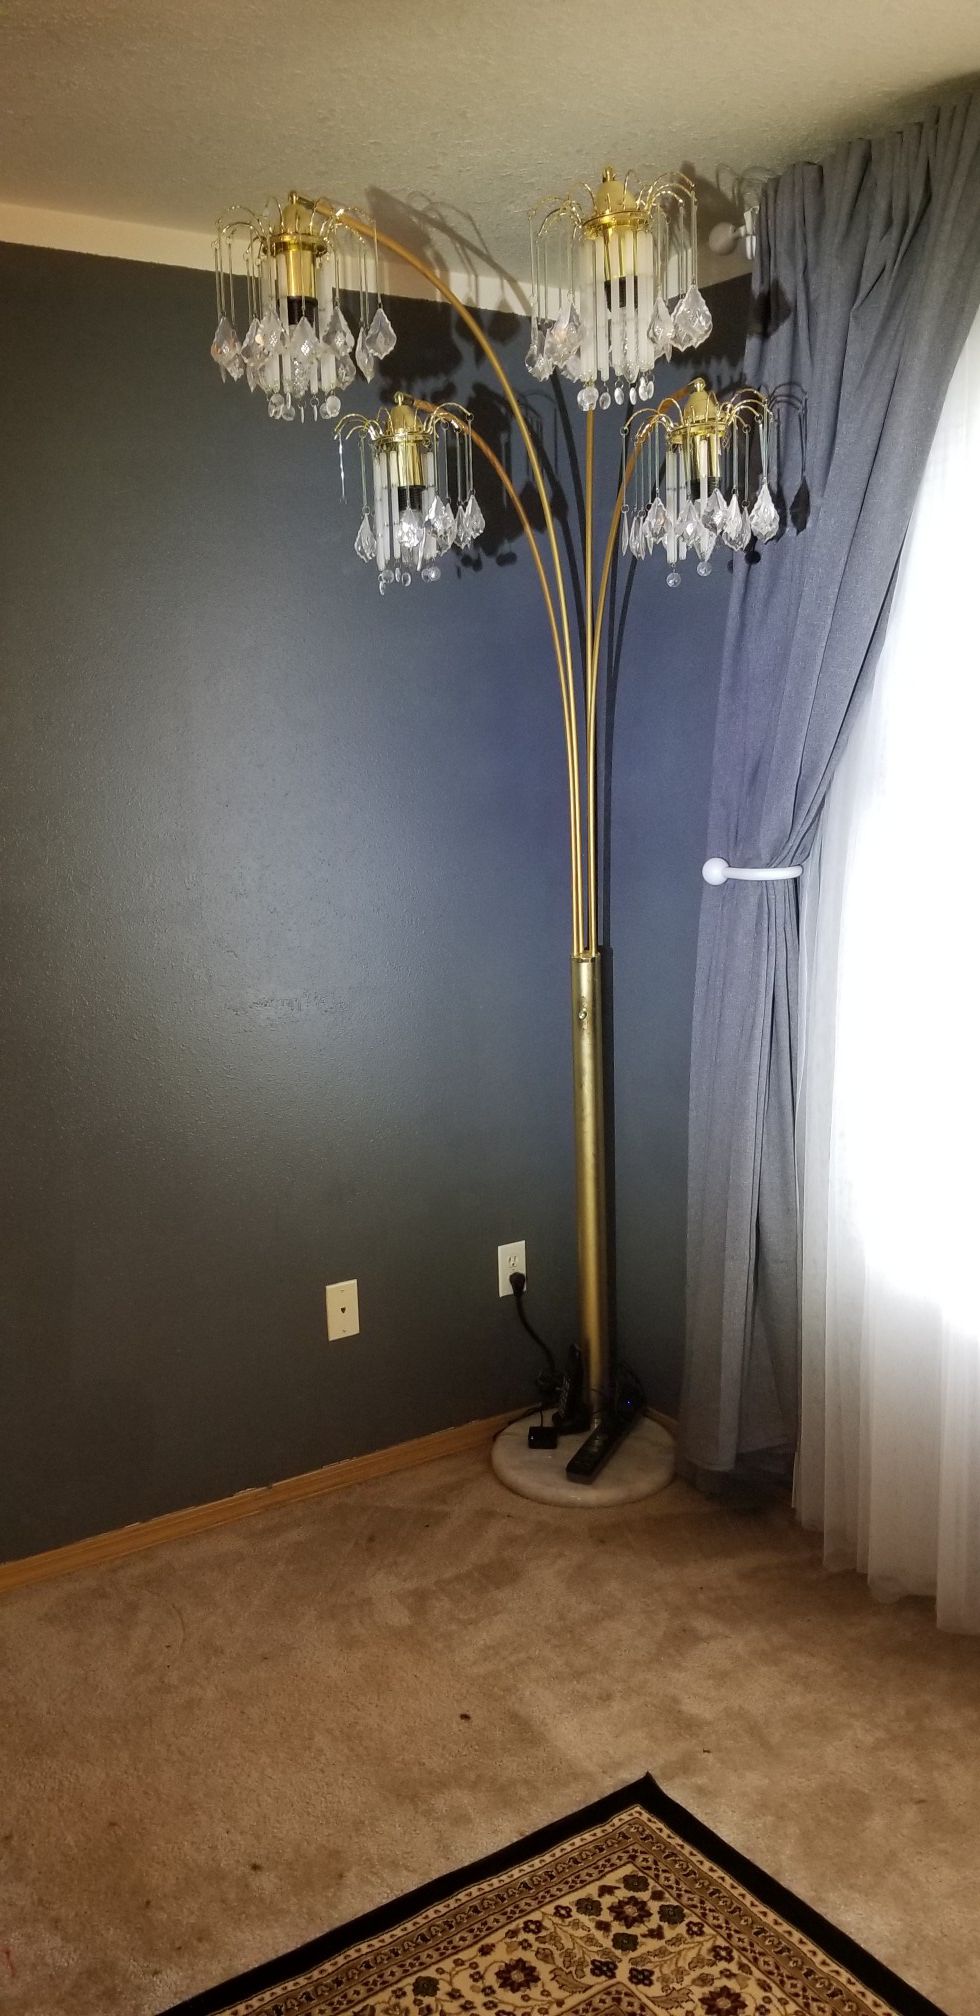 Floor lamp with bulbs